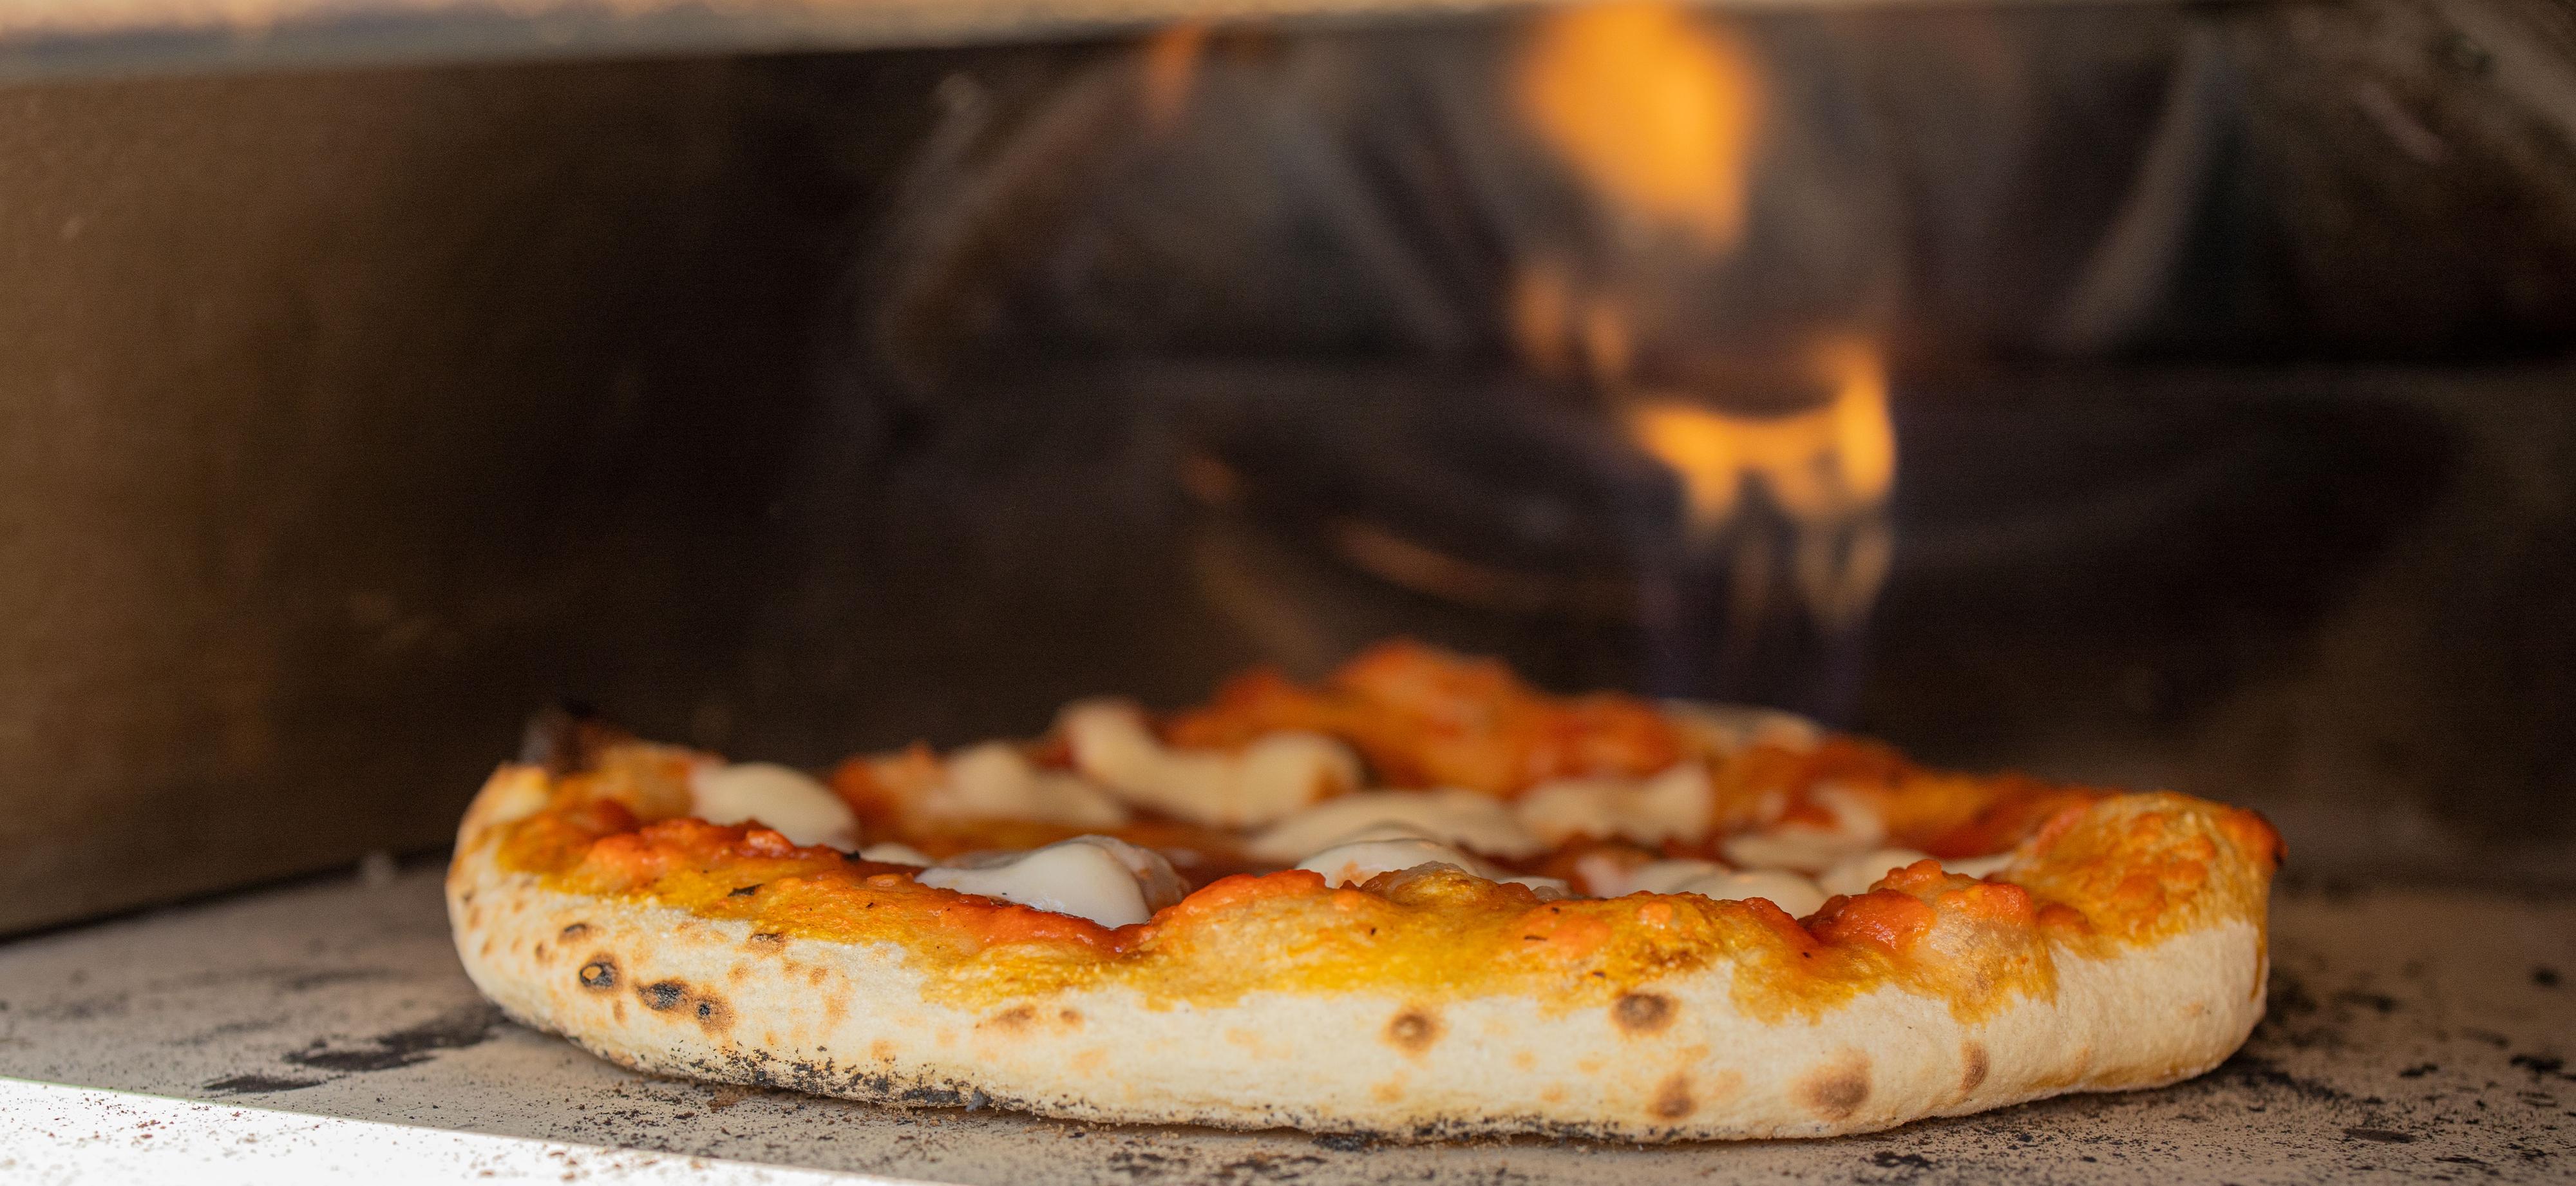 Overflaten på pizzasteinen måler nesten 500 grader celsius lengst bak, noe som er ypperlig for å lage en perfekt napolitansk pizza. 